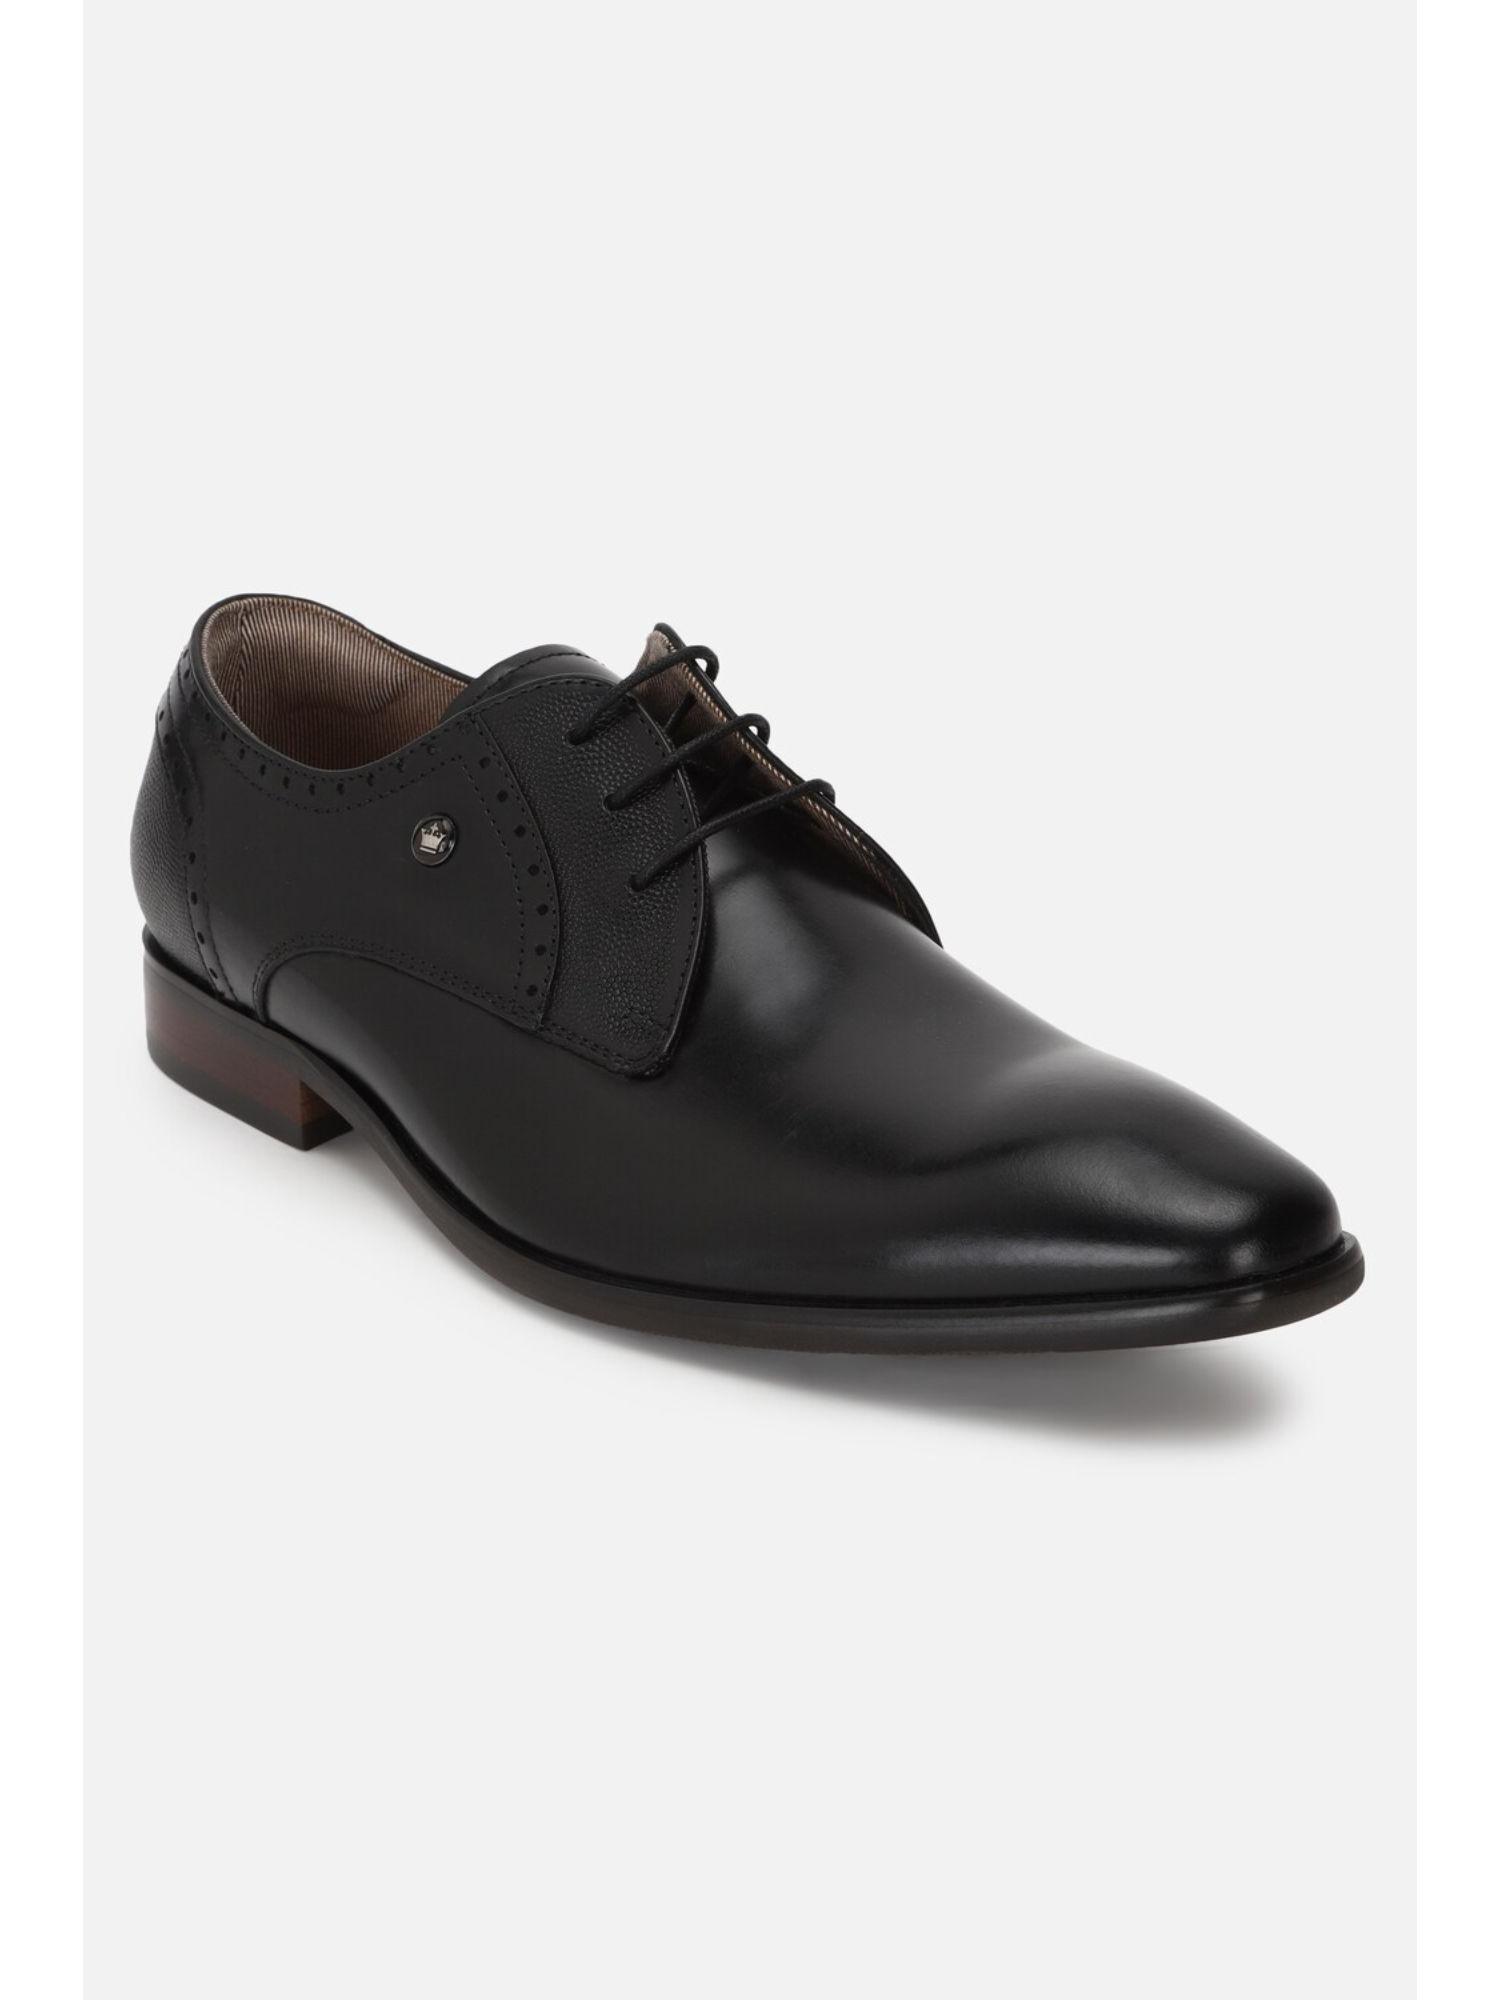 men black leather lace up brogue shoes